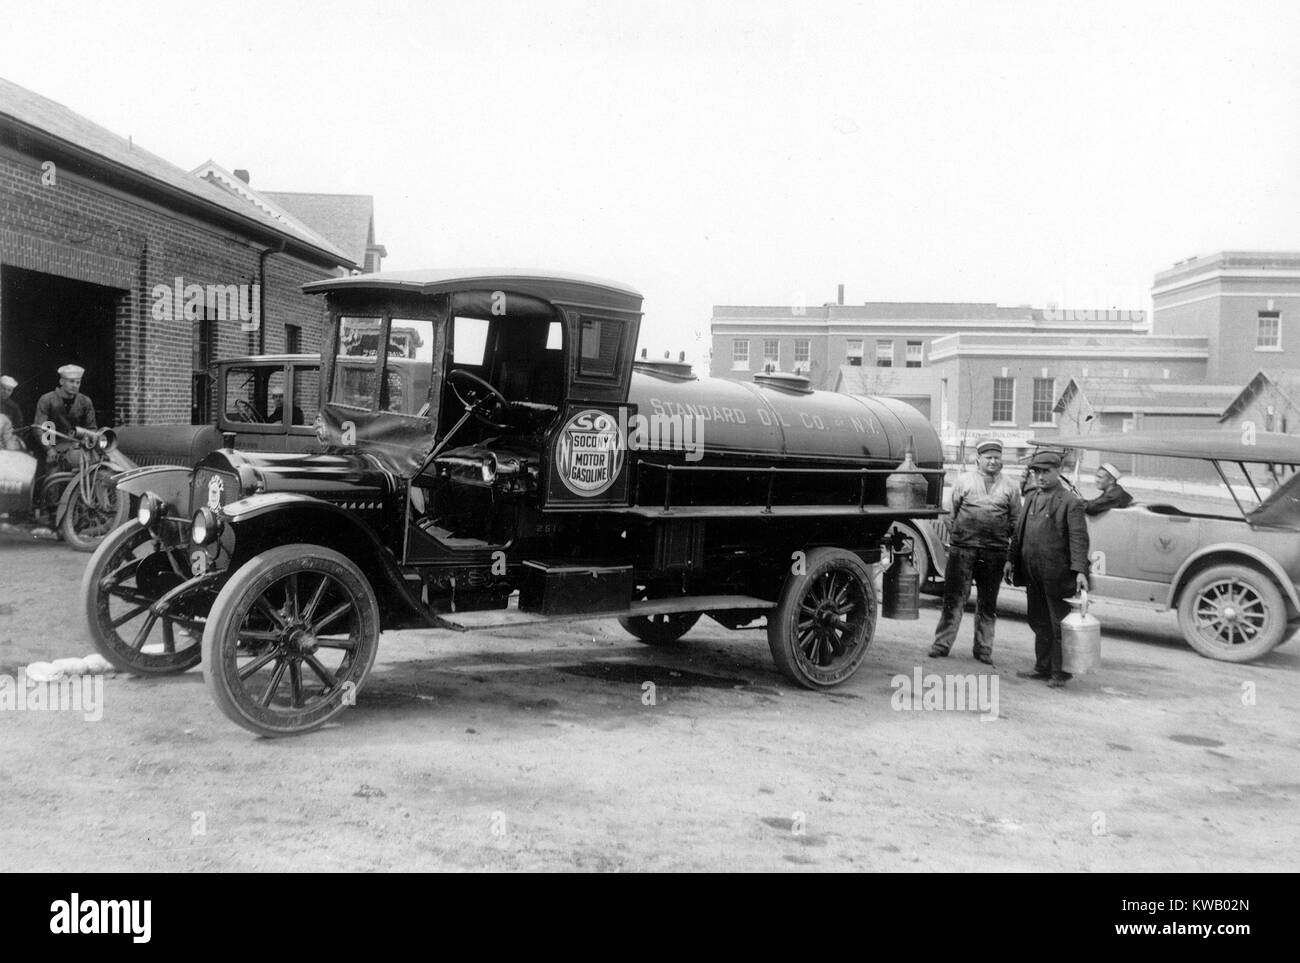 Des camions de livraison de l'essence aux US Naval Station de formation, deux hommes tenant un récipient debout à côté, Newport, Rhode Island, USA, 1920. () Banque D'Images